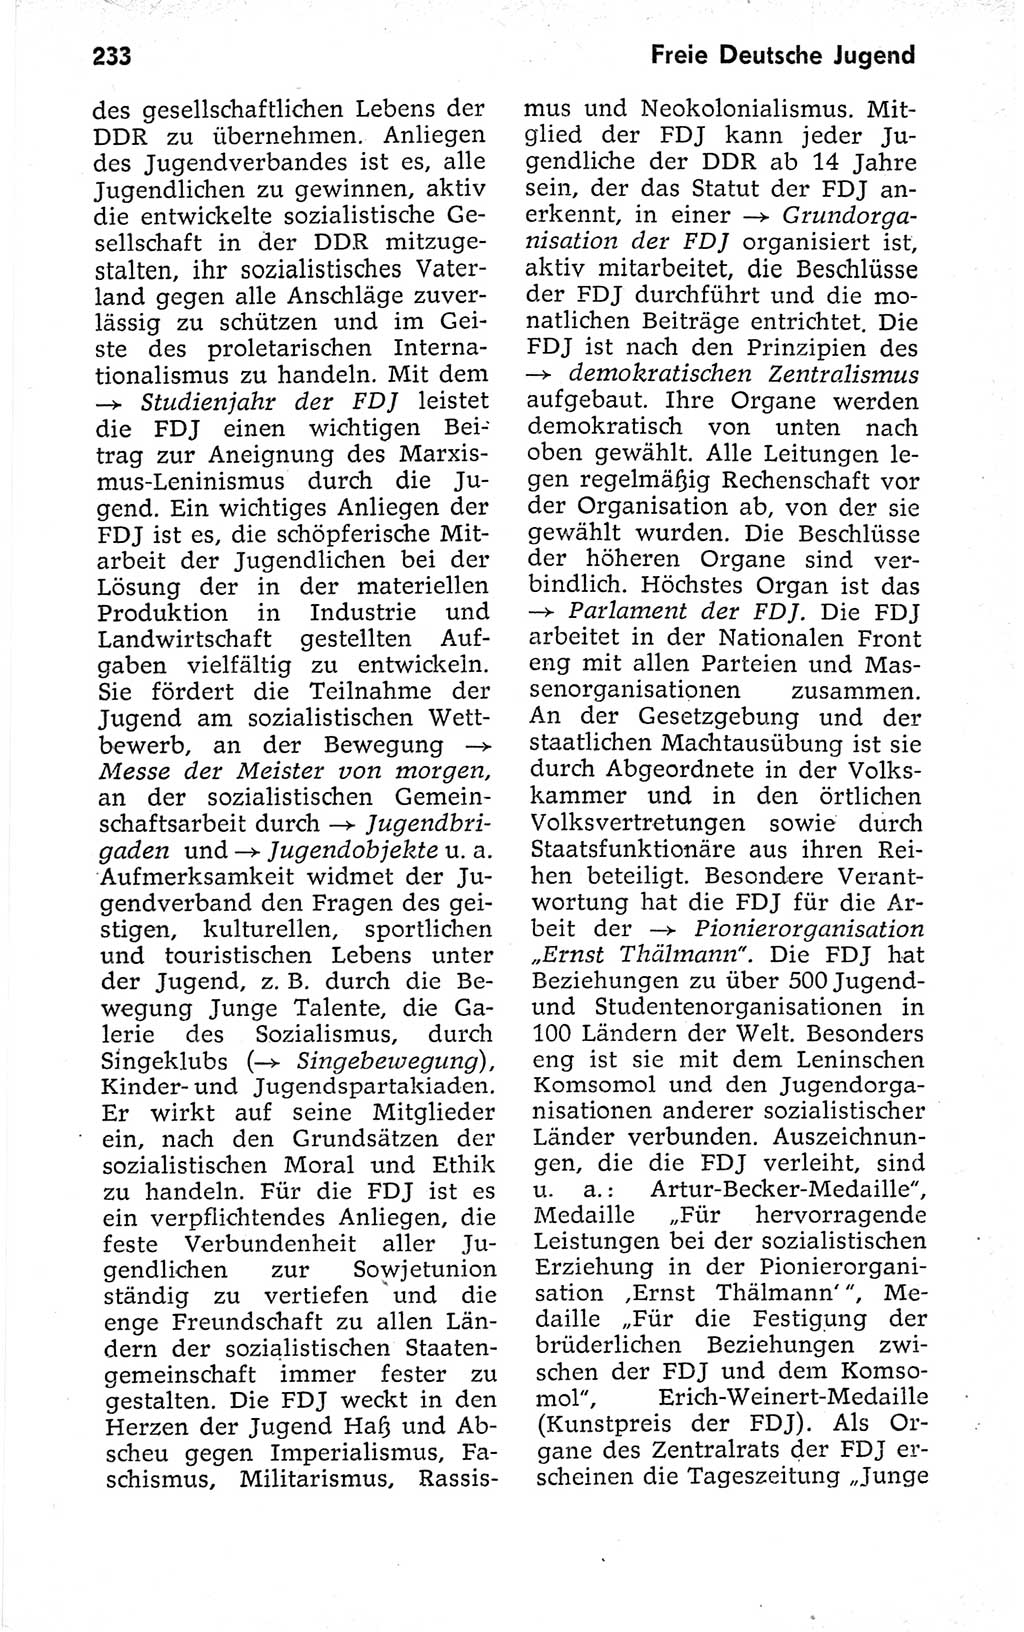 Kleines politisches Wörterbuch [Deutsche Demokratische Republik (DDR)] 1973, Seite 233 (Kl. pol. Wb. DDR 1973, S. 233)